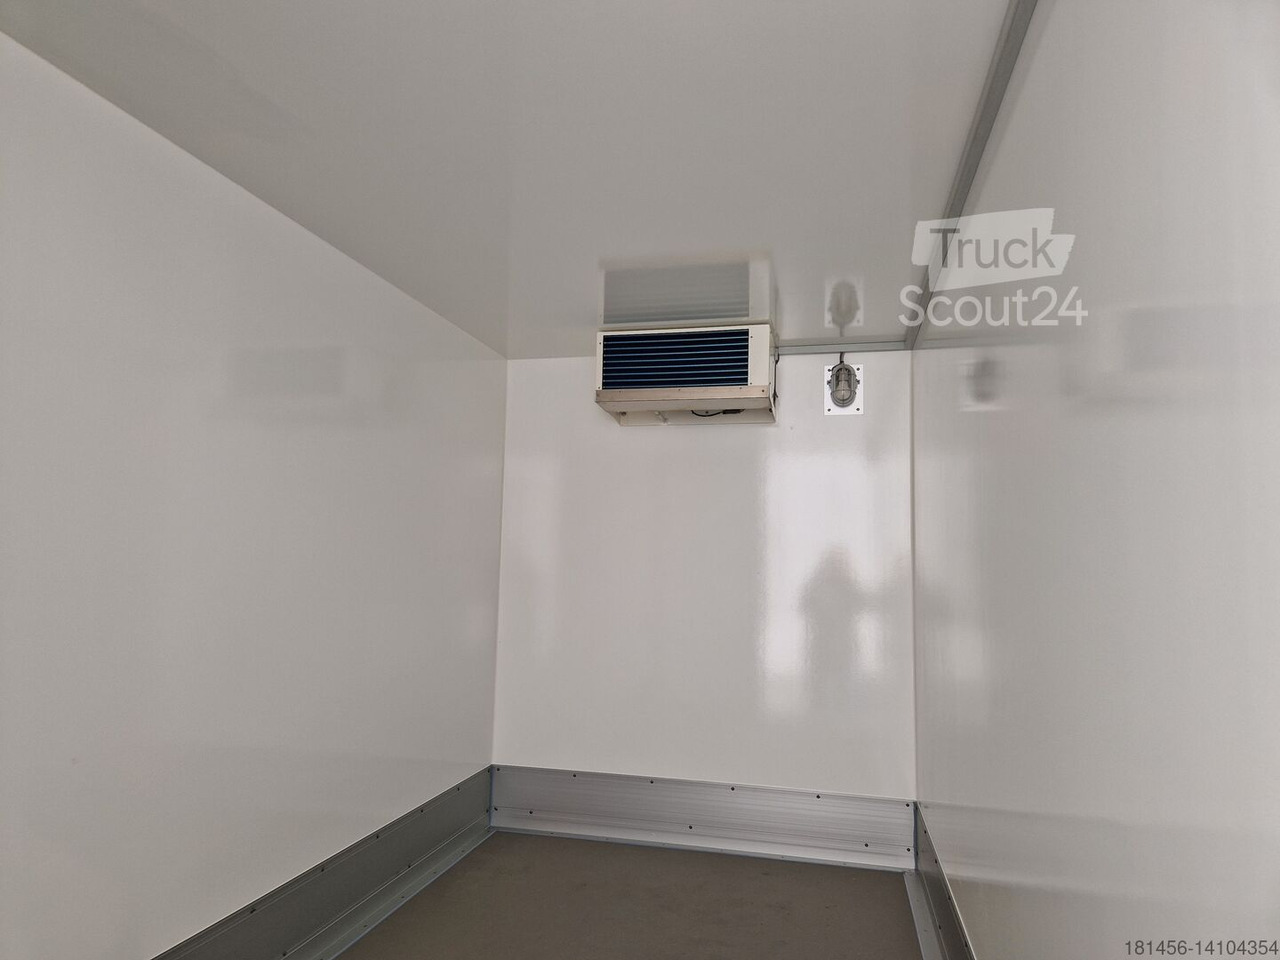 New Refrigerator trailer Wm Meyer Tiefkühlanhänger direkt verfügbar AZK 2734/180 336x170x200cm 100 isolierung Govi 230V Kühlung: picture 7